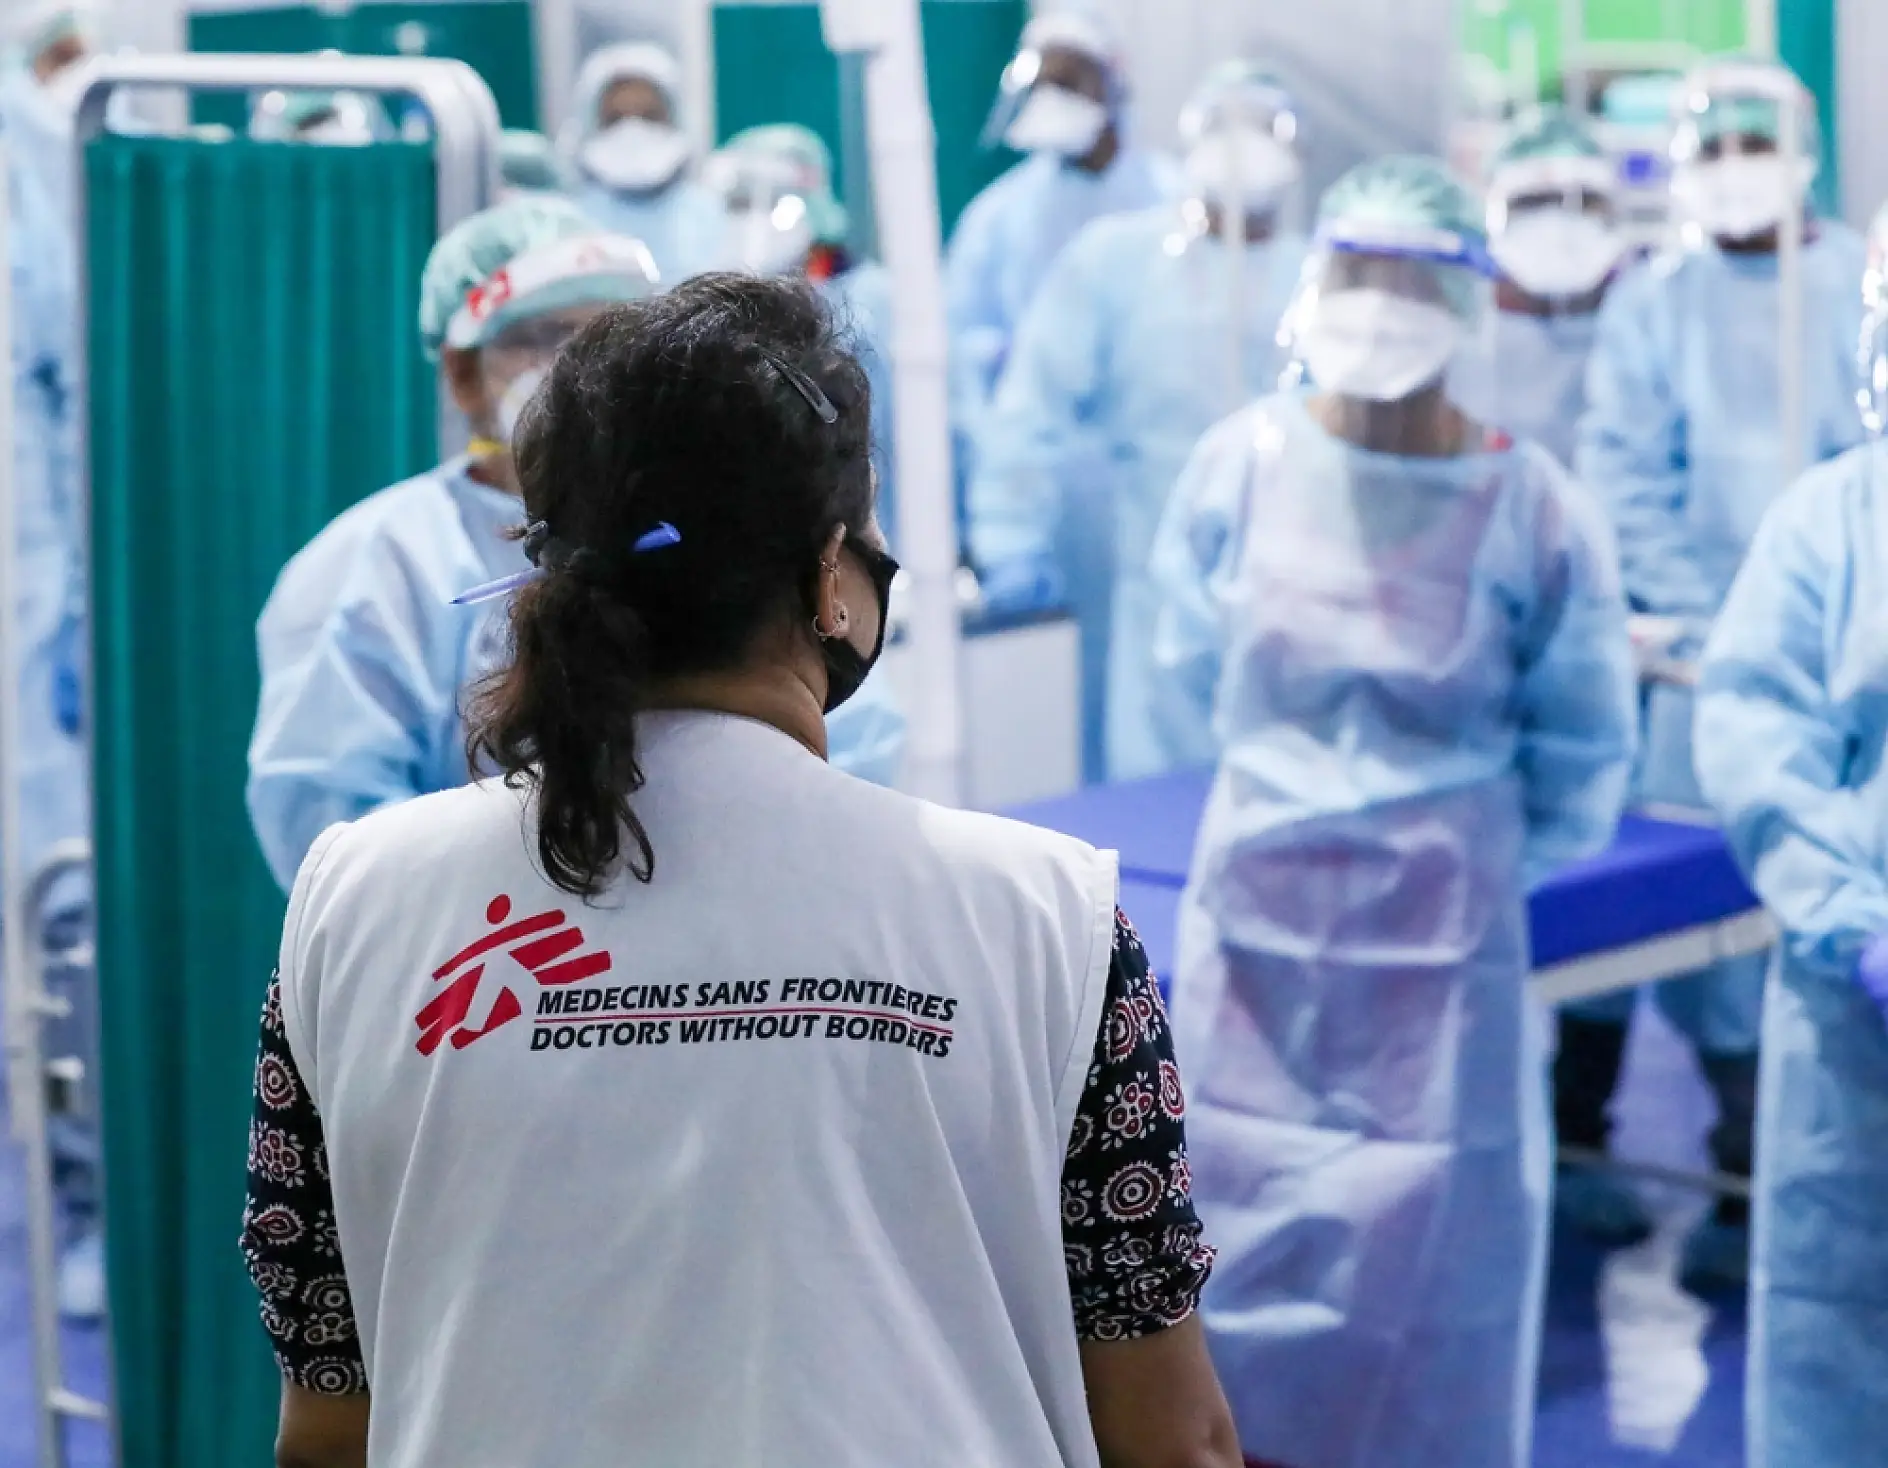 Một trong những ưu tiên chính của MSF là sự an toàn của đội ngũ nhân viên y tế, và đó là lý do tại sao tất cả nhân viên phải tuân theo các quy trình nghiêm ngặt về an toàn và an ninh.